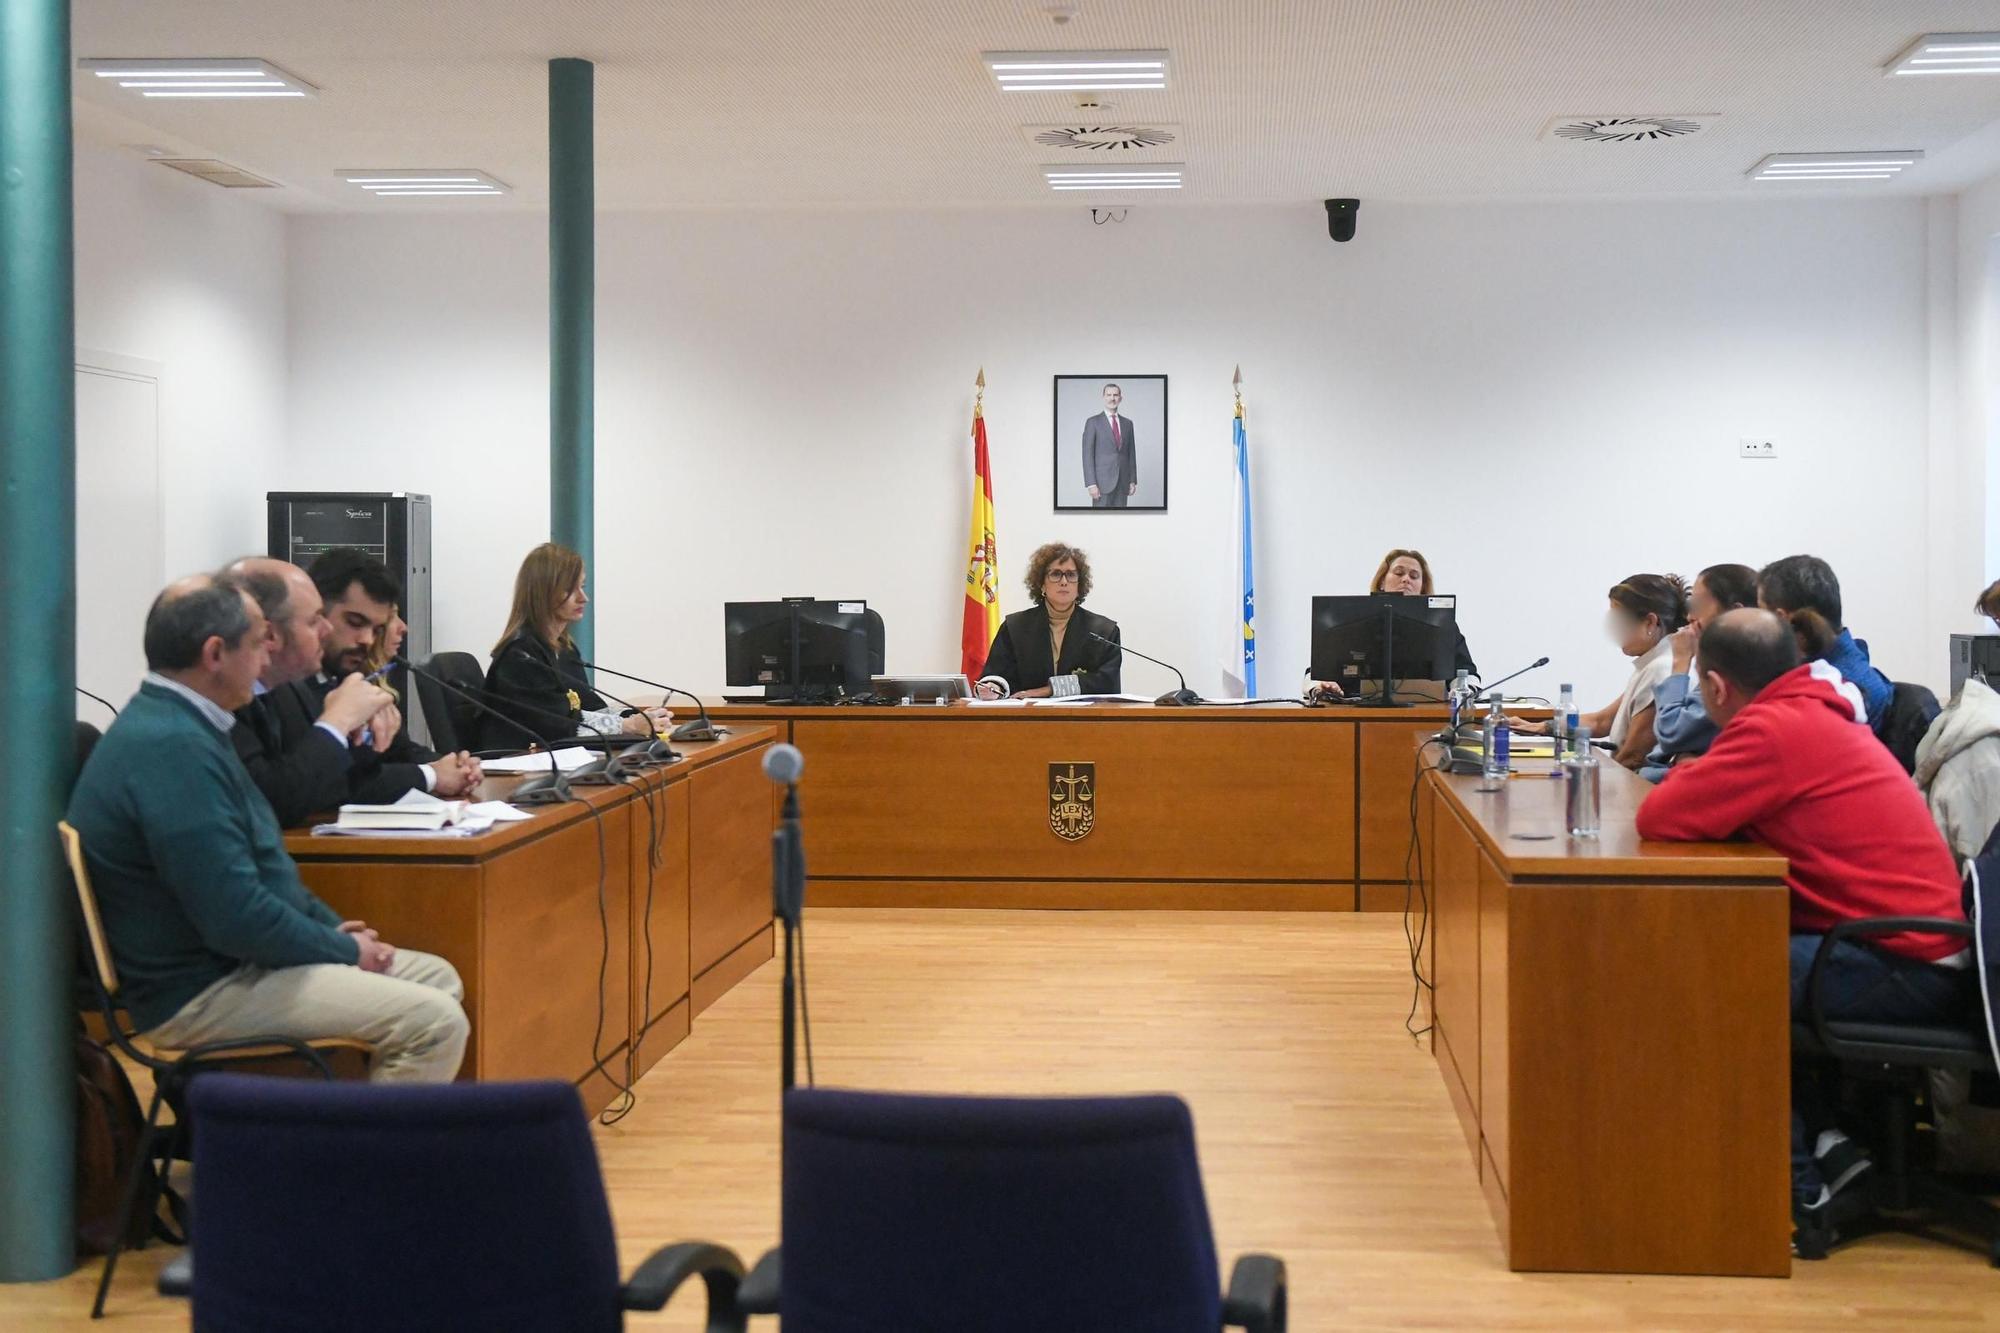 Crimen Oza-Cesuras: El jurado considera culpable por unanimidad al acusado por el crimen de Oza-Cesuras